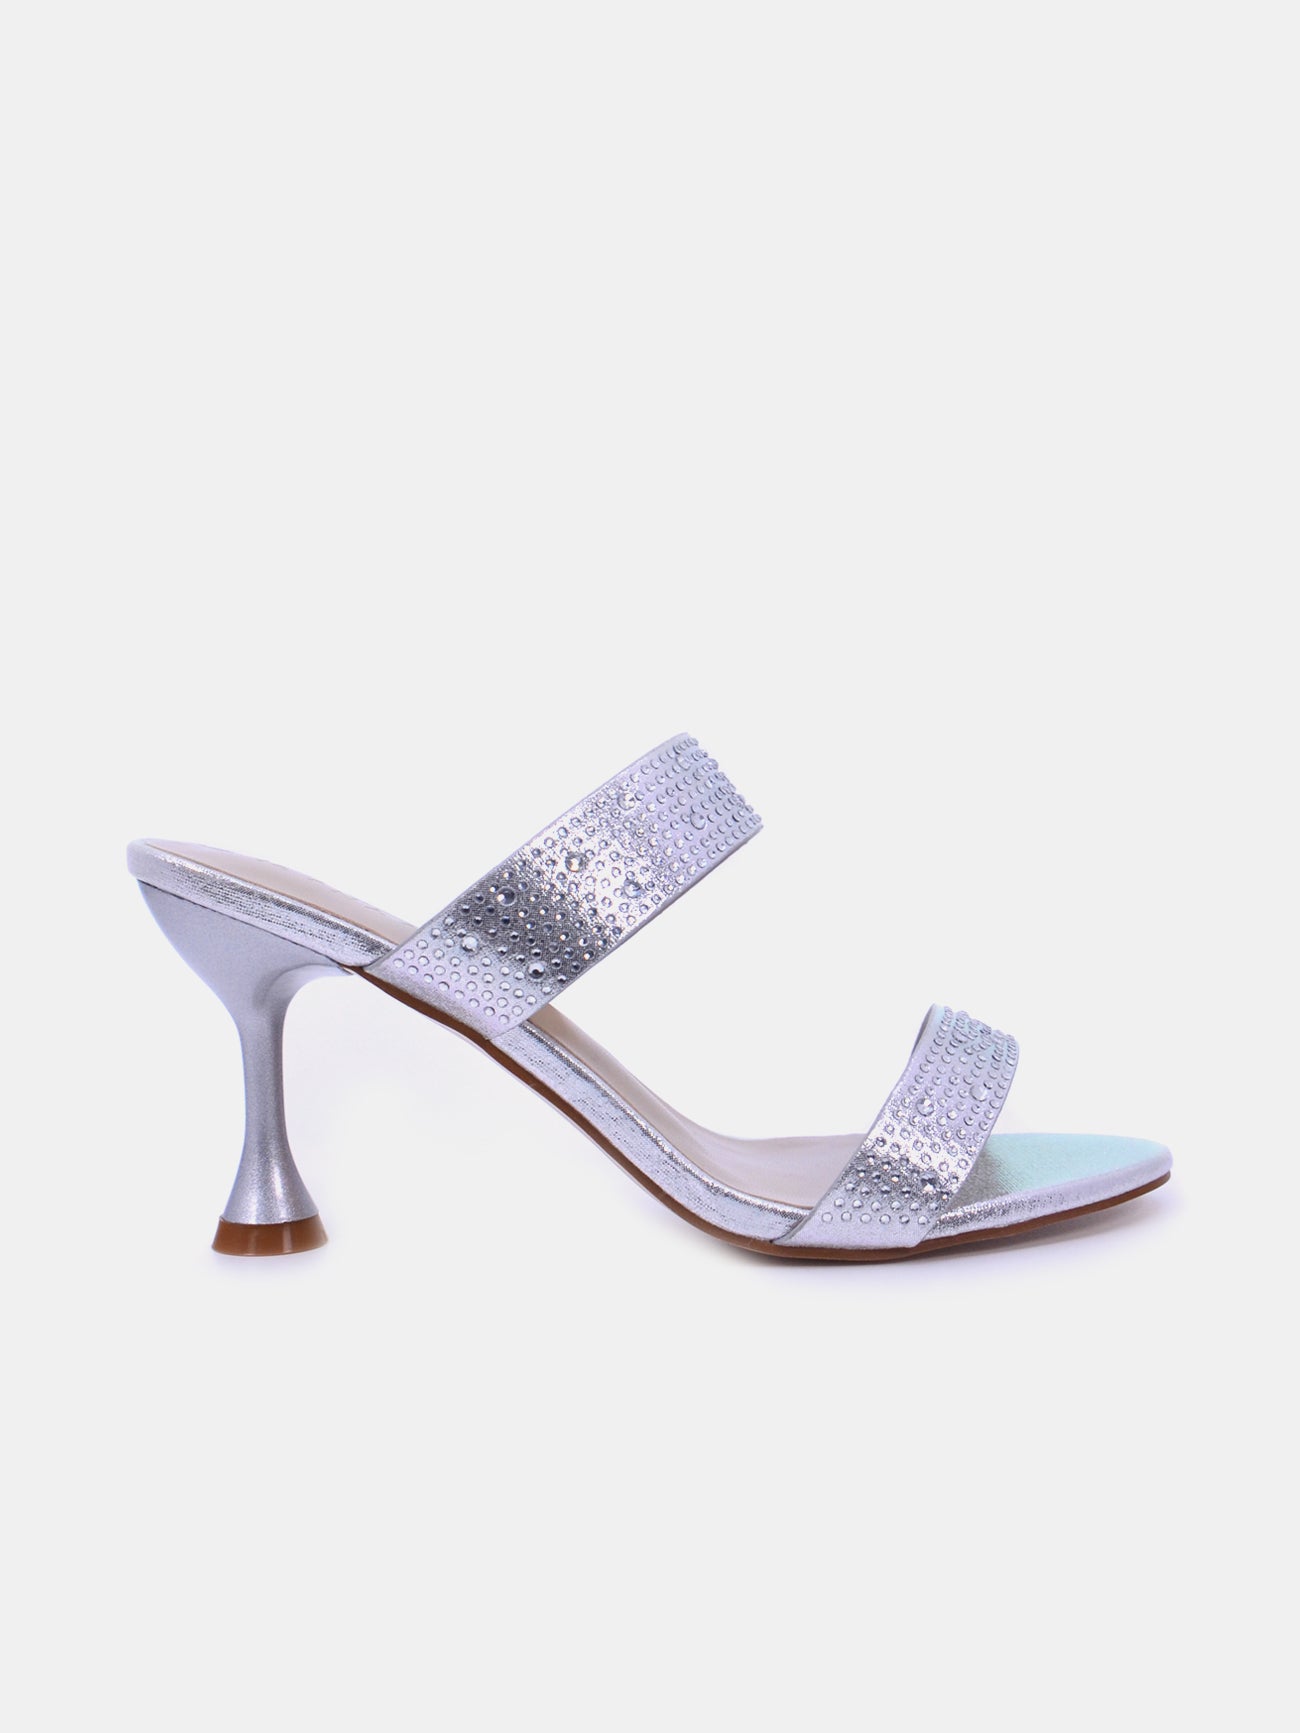 Mynaal Lylith Women's Kitten Heel Sandals #color_Silver